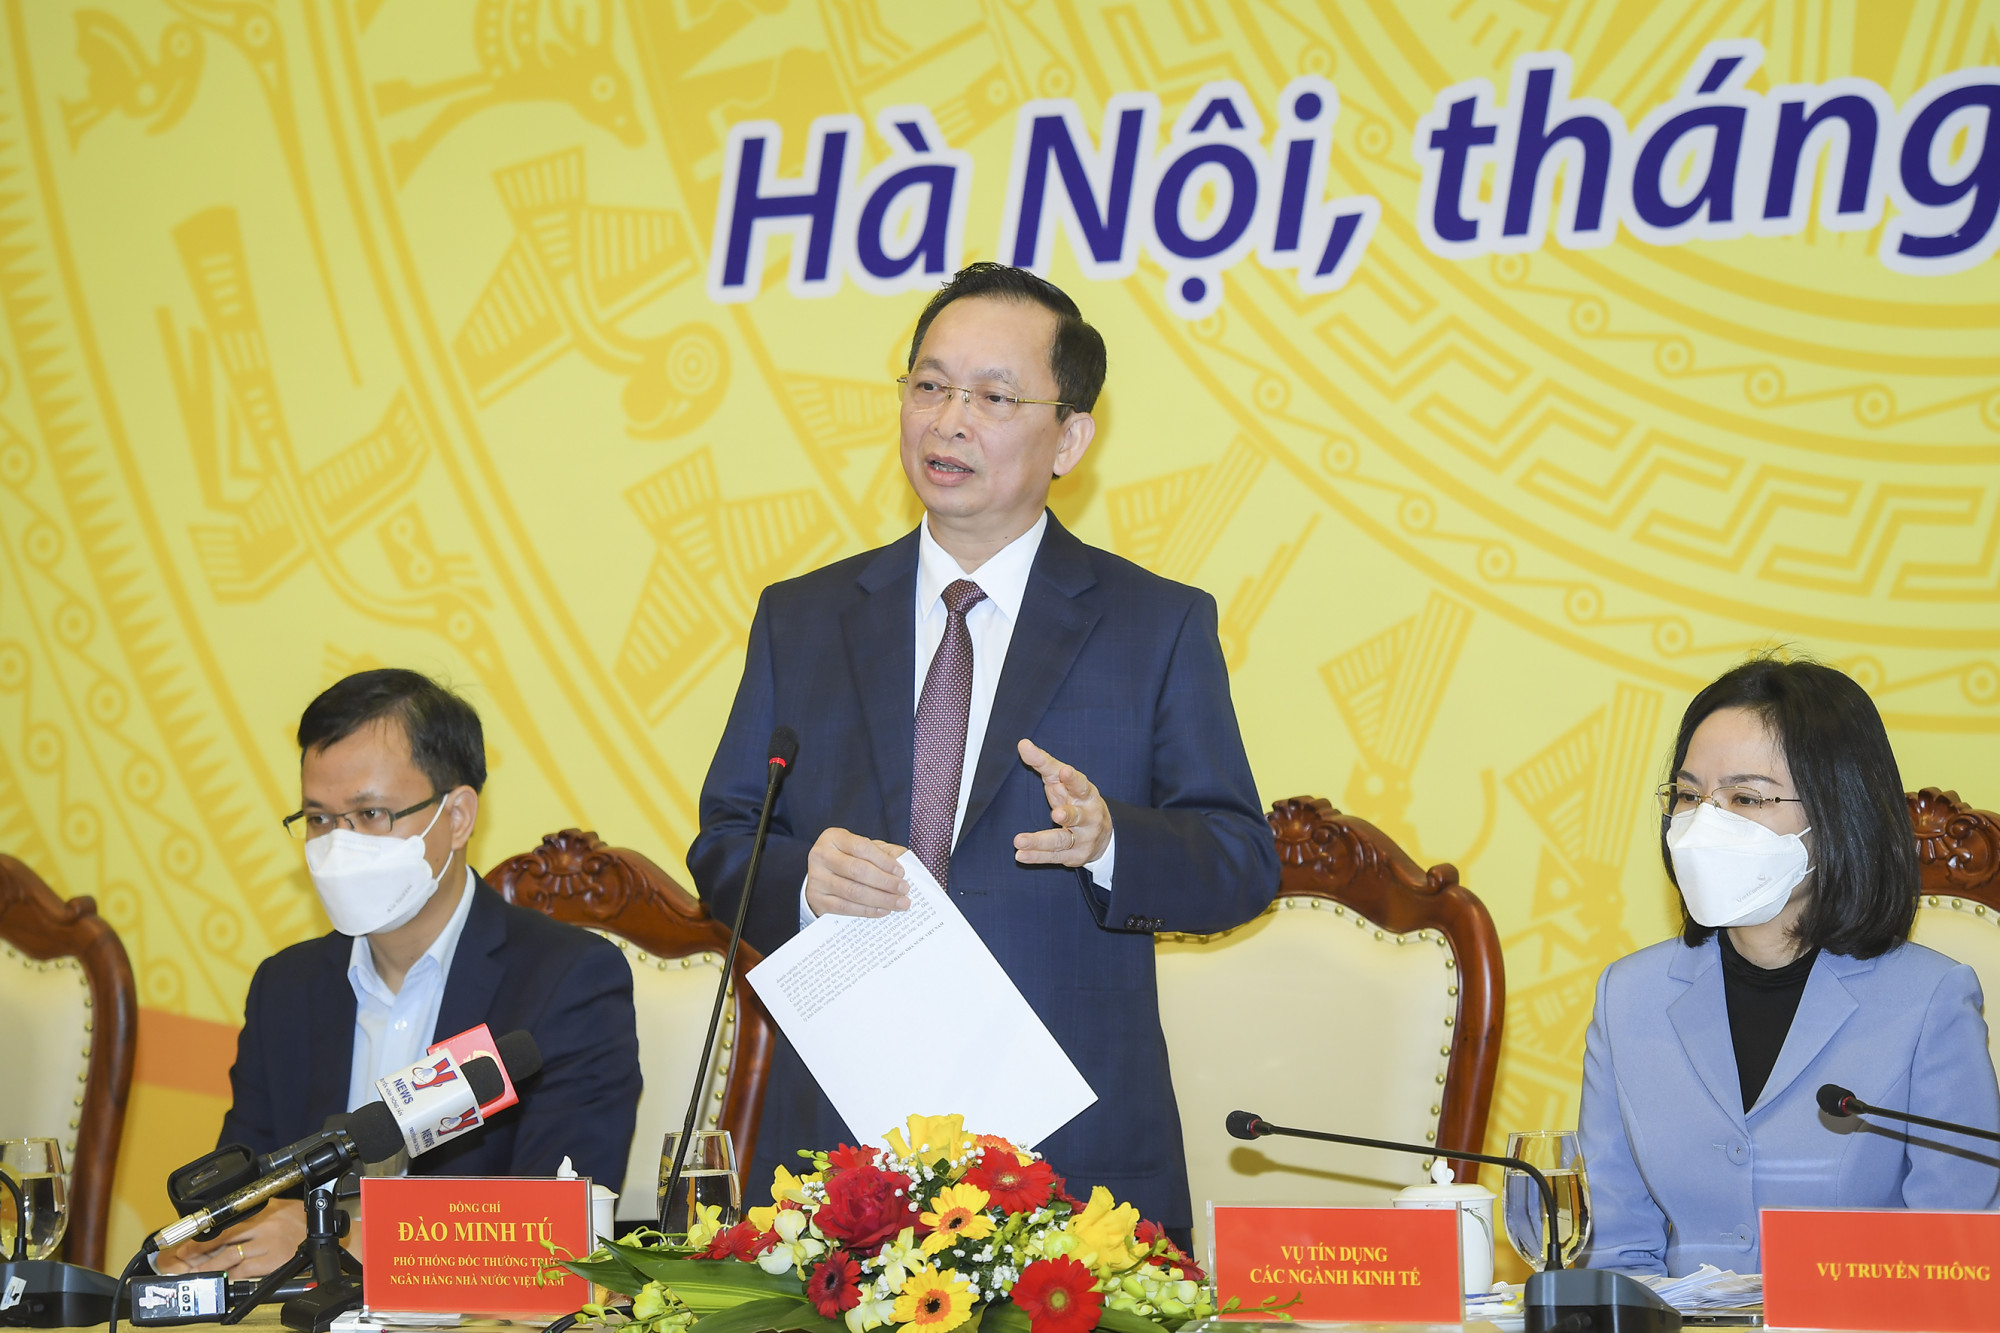 Phó thống đốc thường trực Đào Minh Tú đề nghị các ngân hàng tiếp tục tiết kiệm chi phí để trong năm 2022 phấn đấu giảm thêm lãi suất 